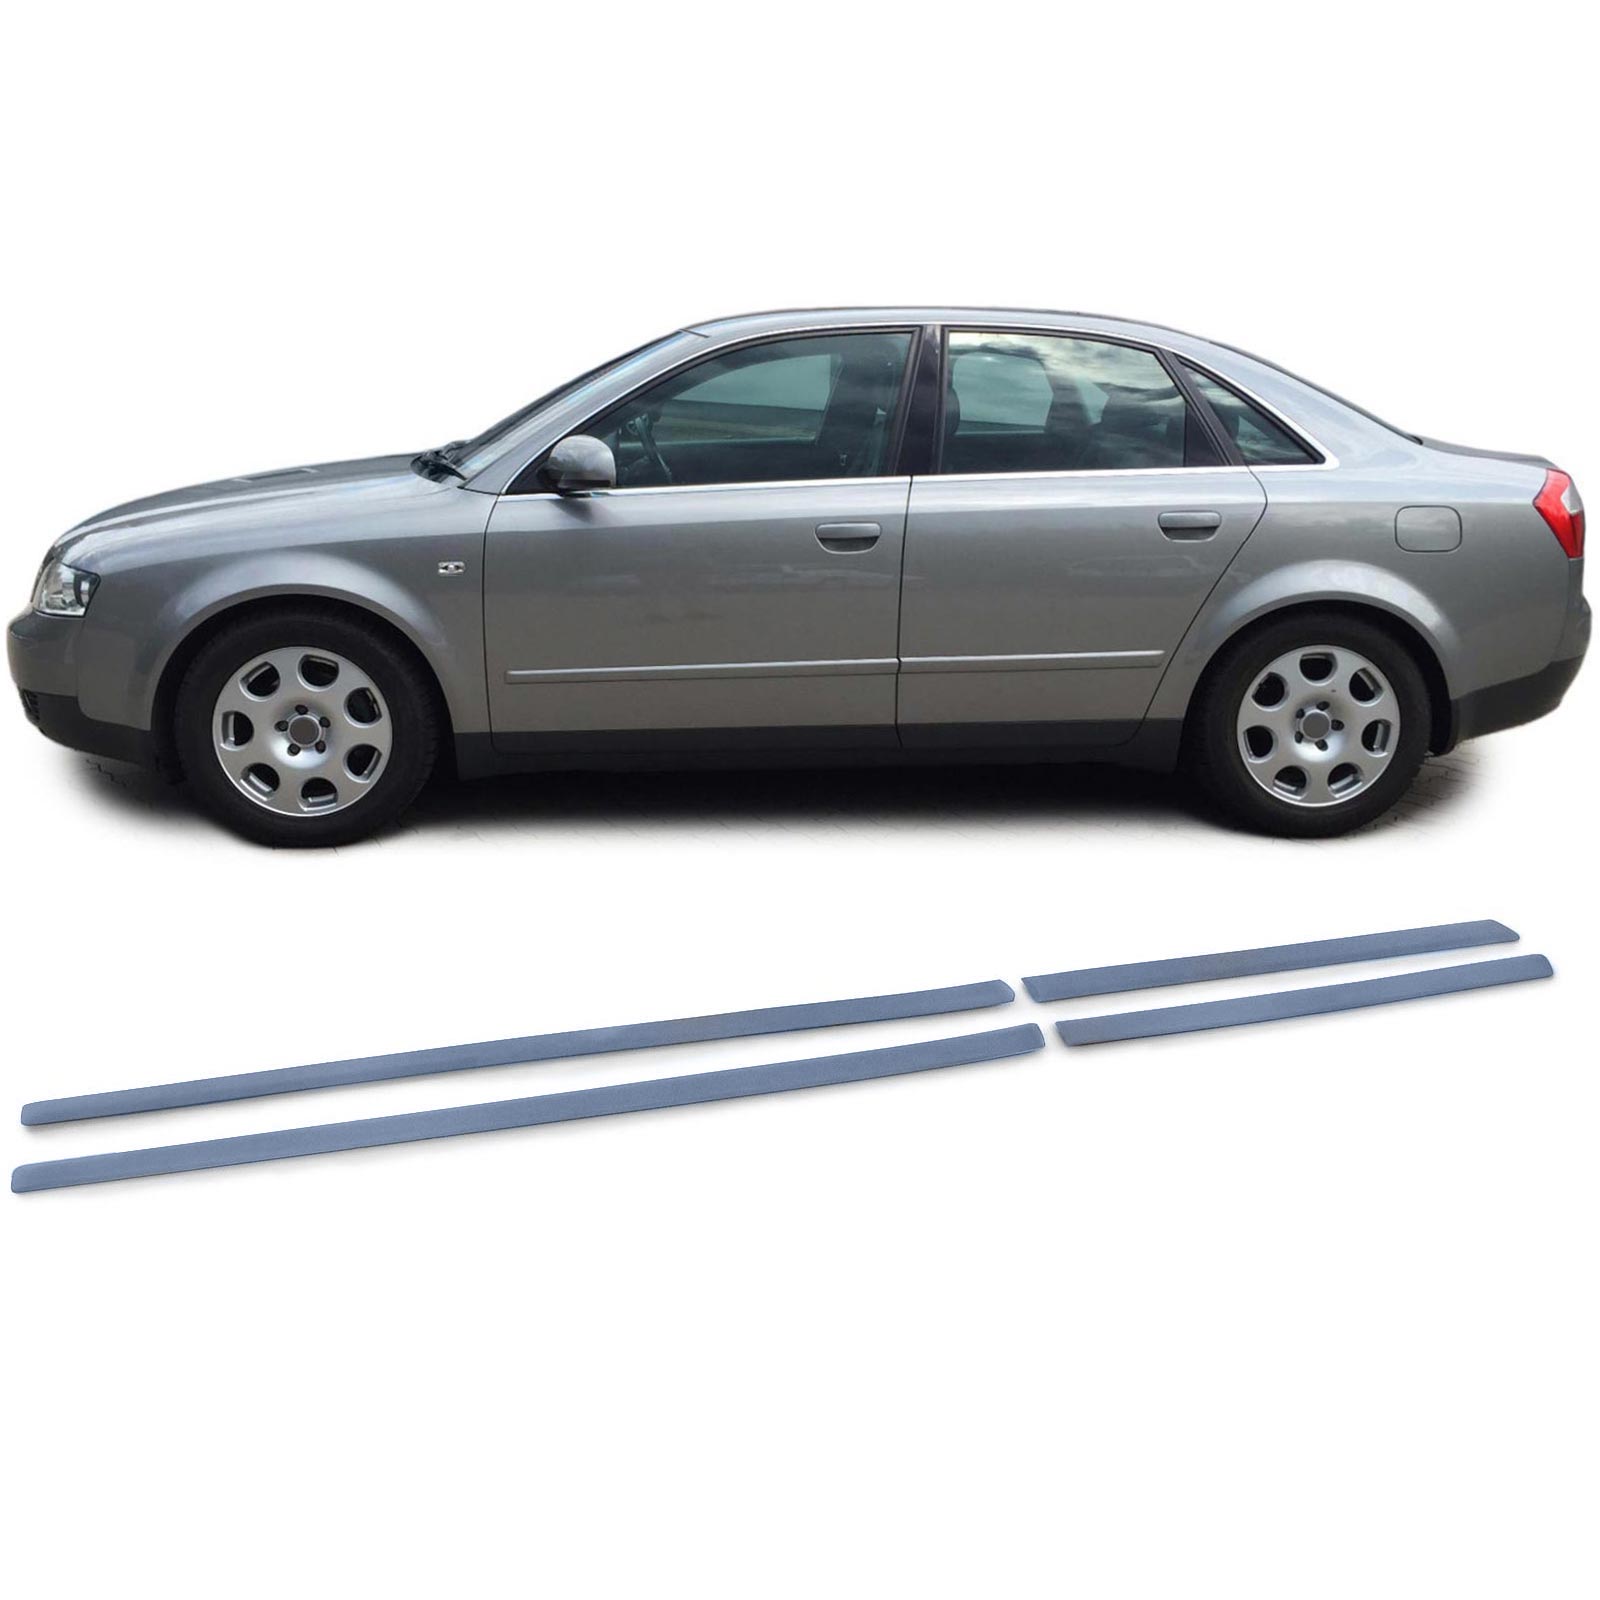 Türleisten Stoßleisten Zierleisten Set 4-teilig passend für Audi A4 B6 8E  00-04 kaufen